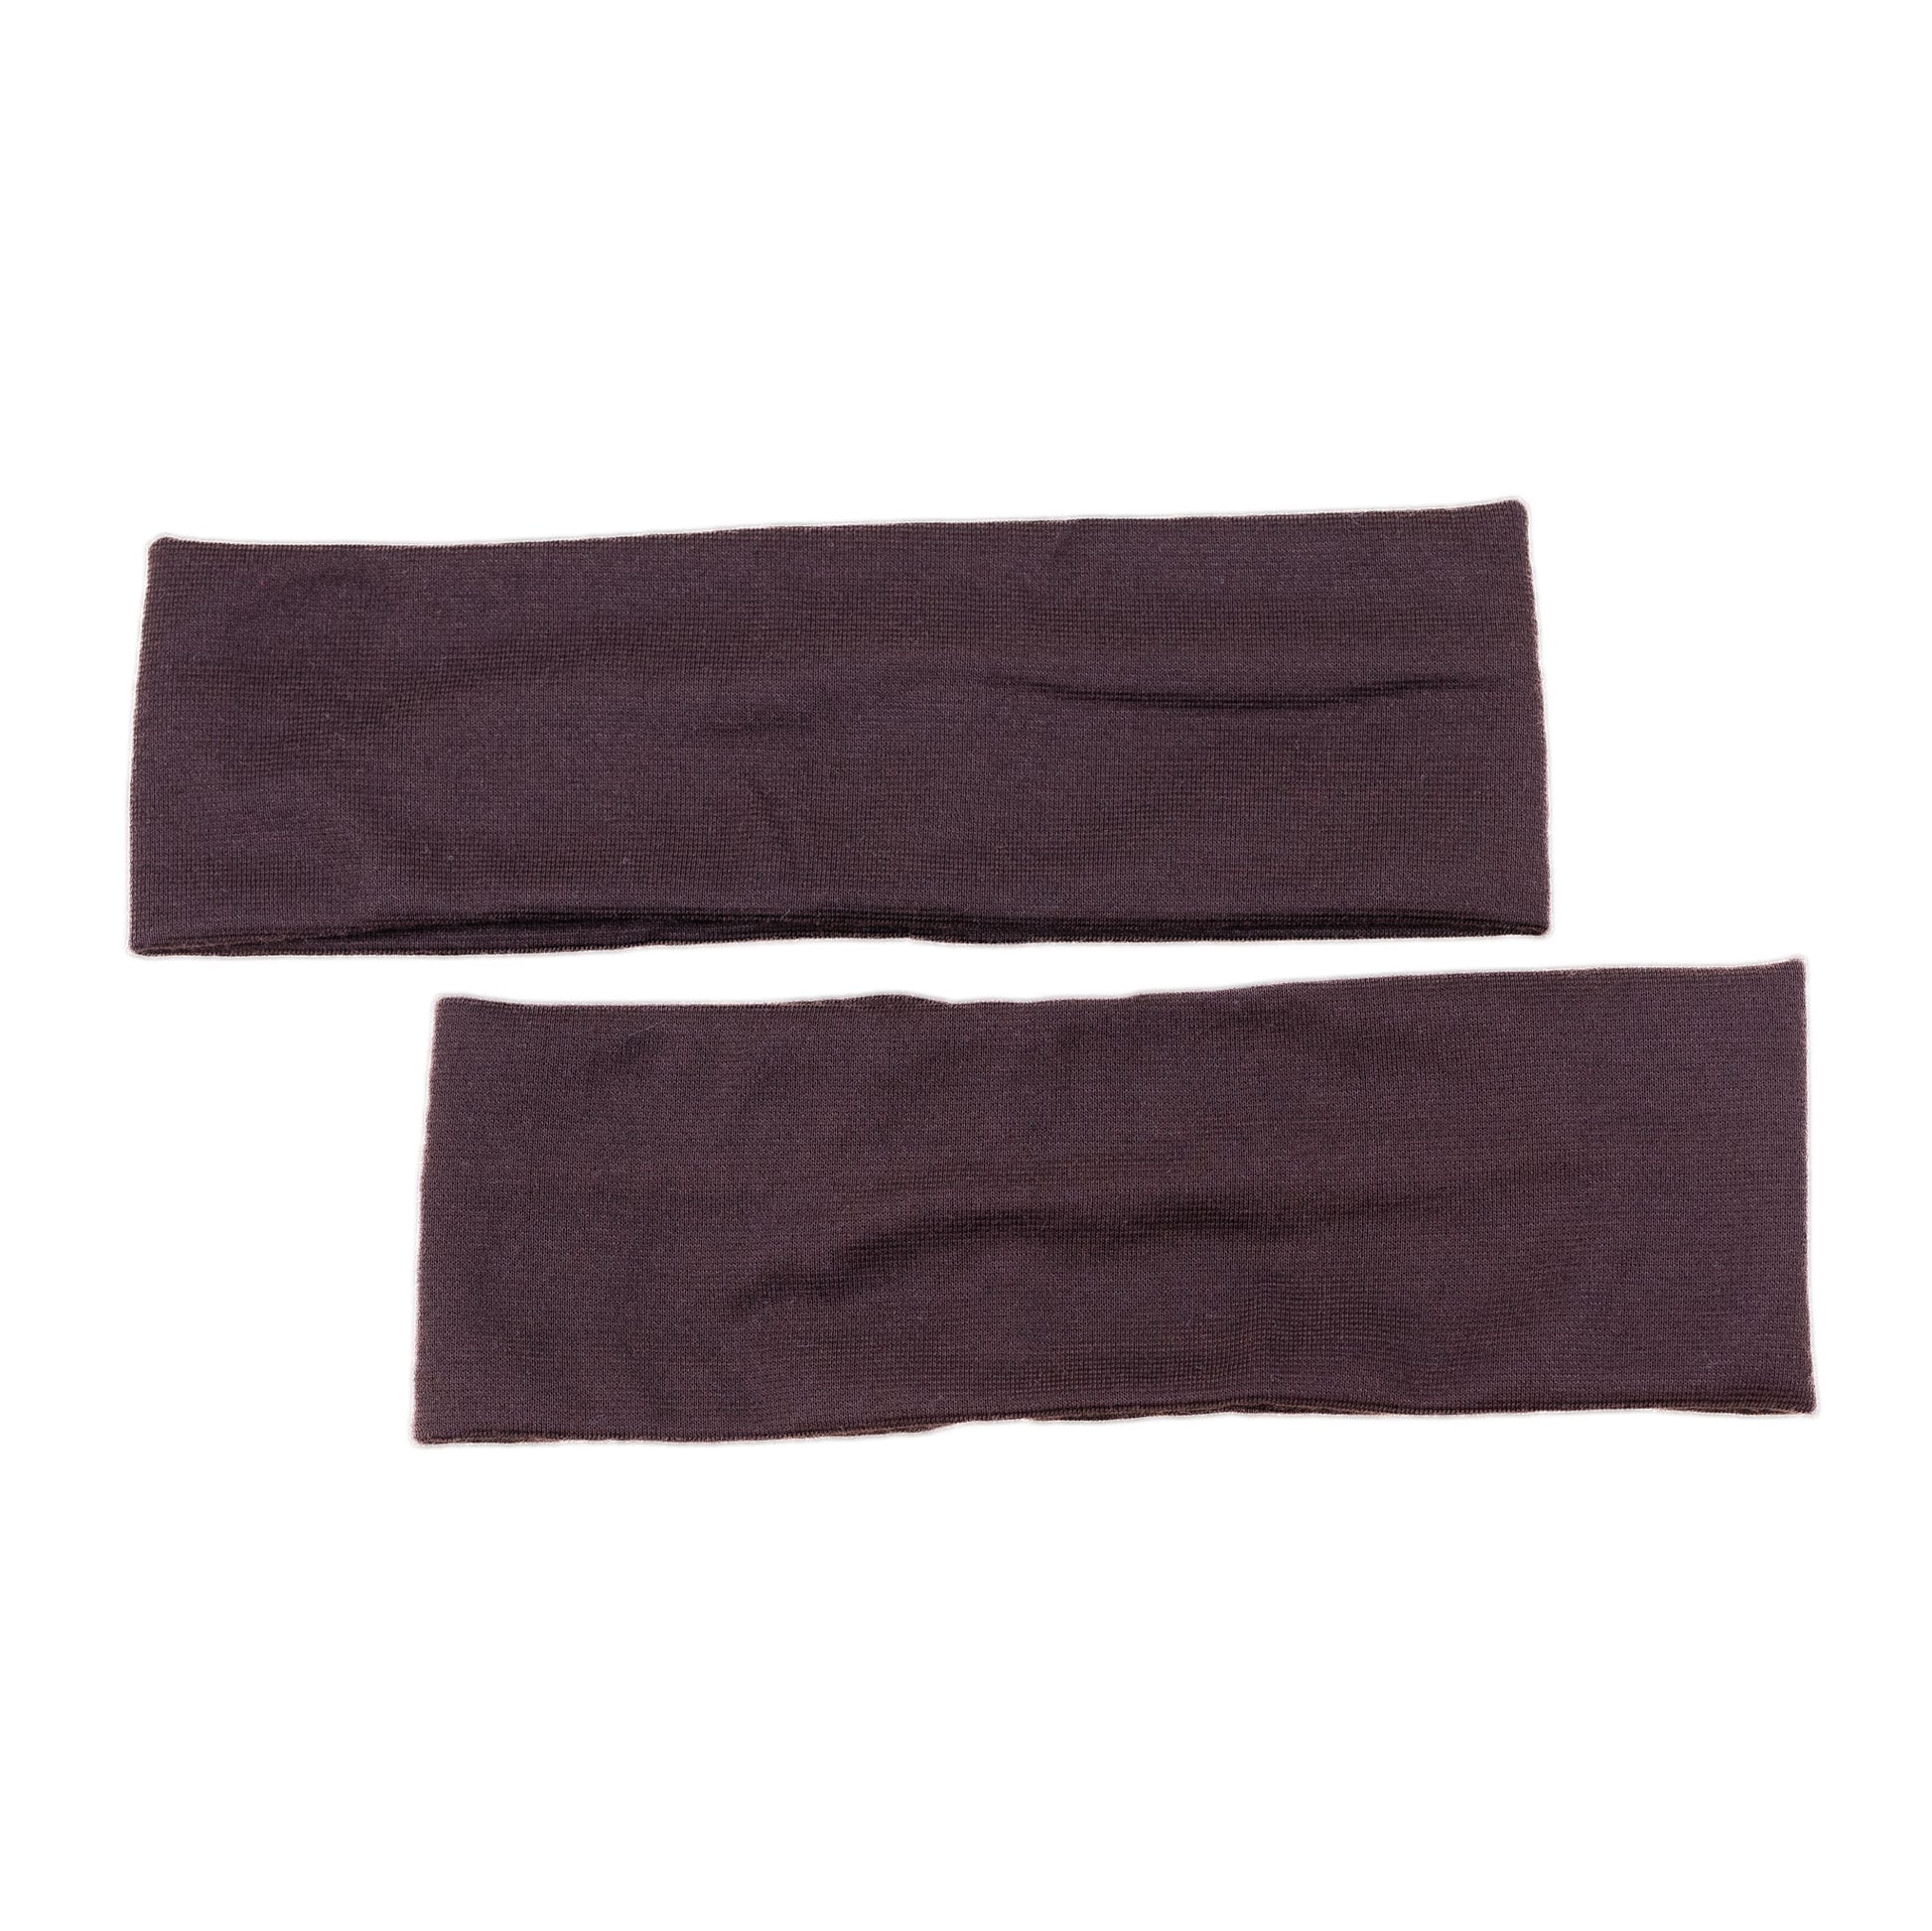 Bentițe de păr simple, lățime 6,5 cm, set 2 buc - Maro